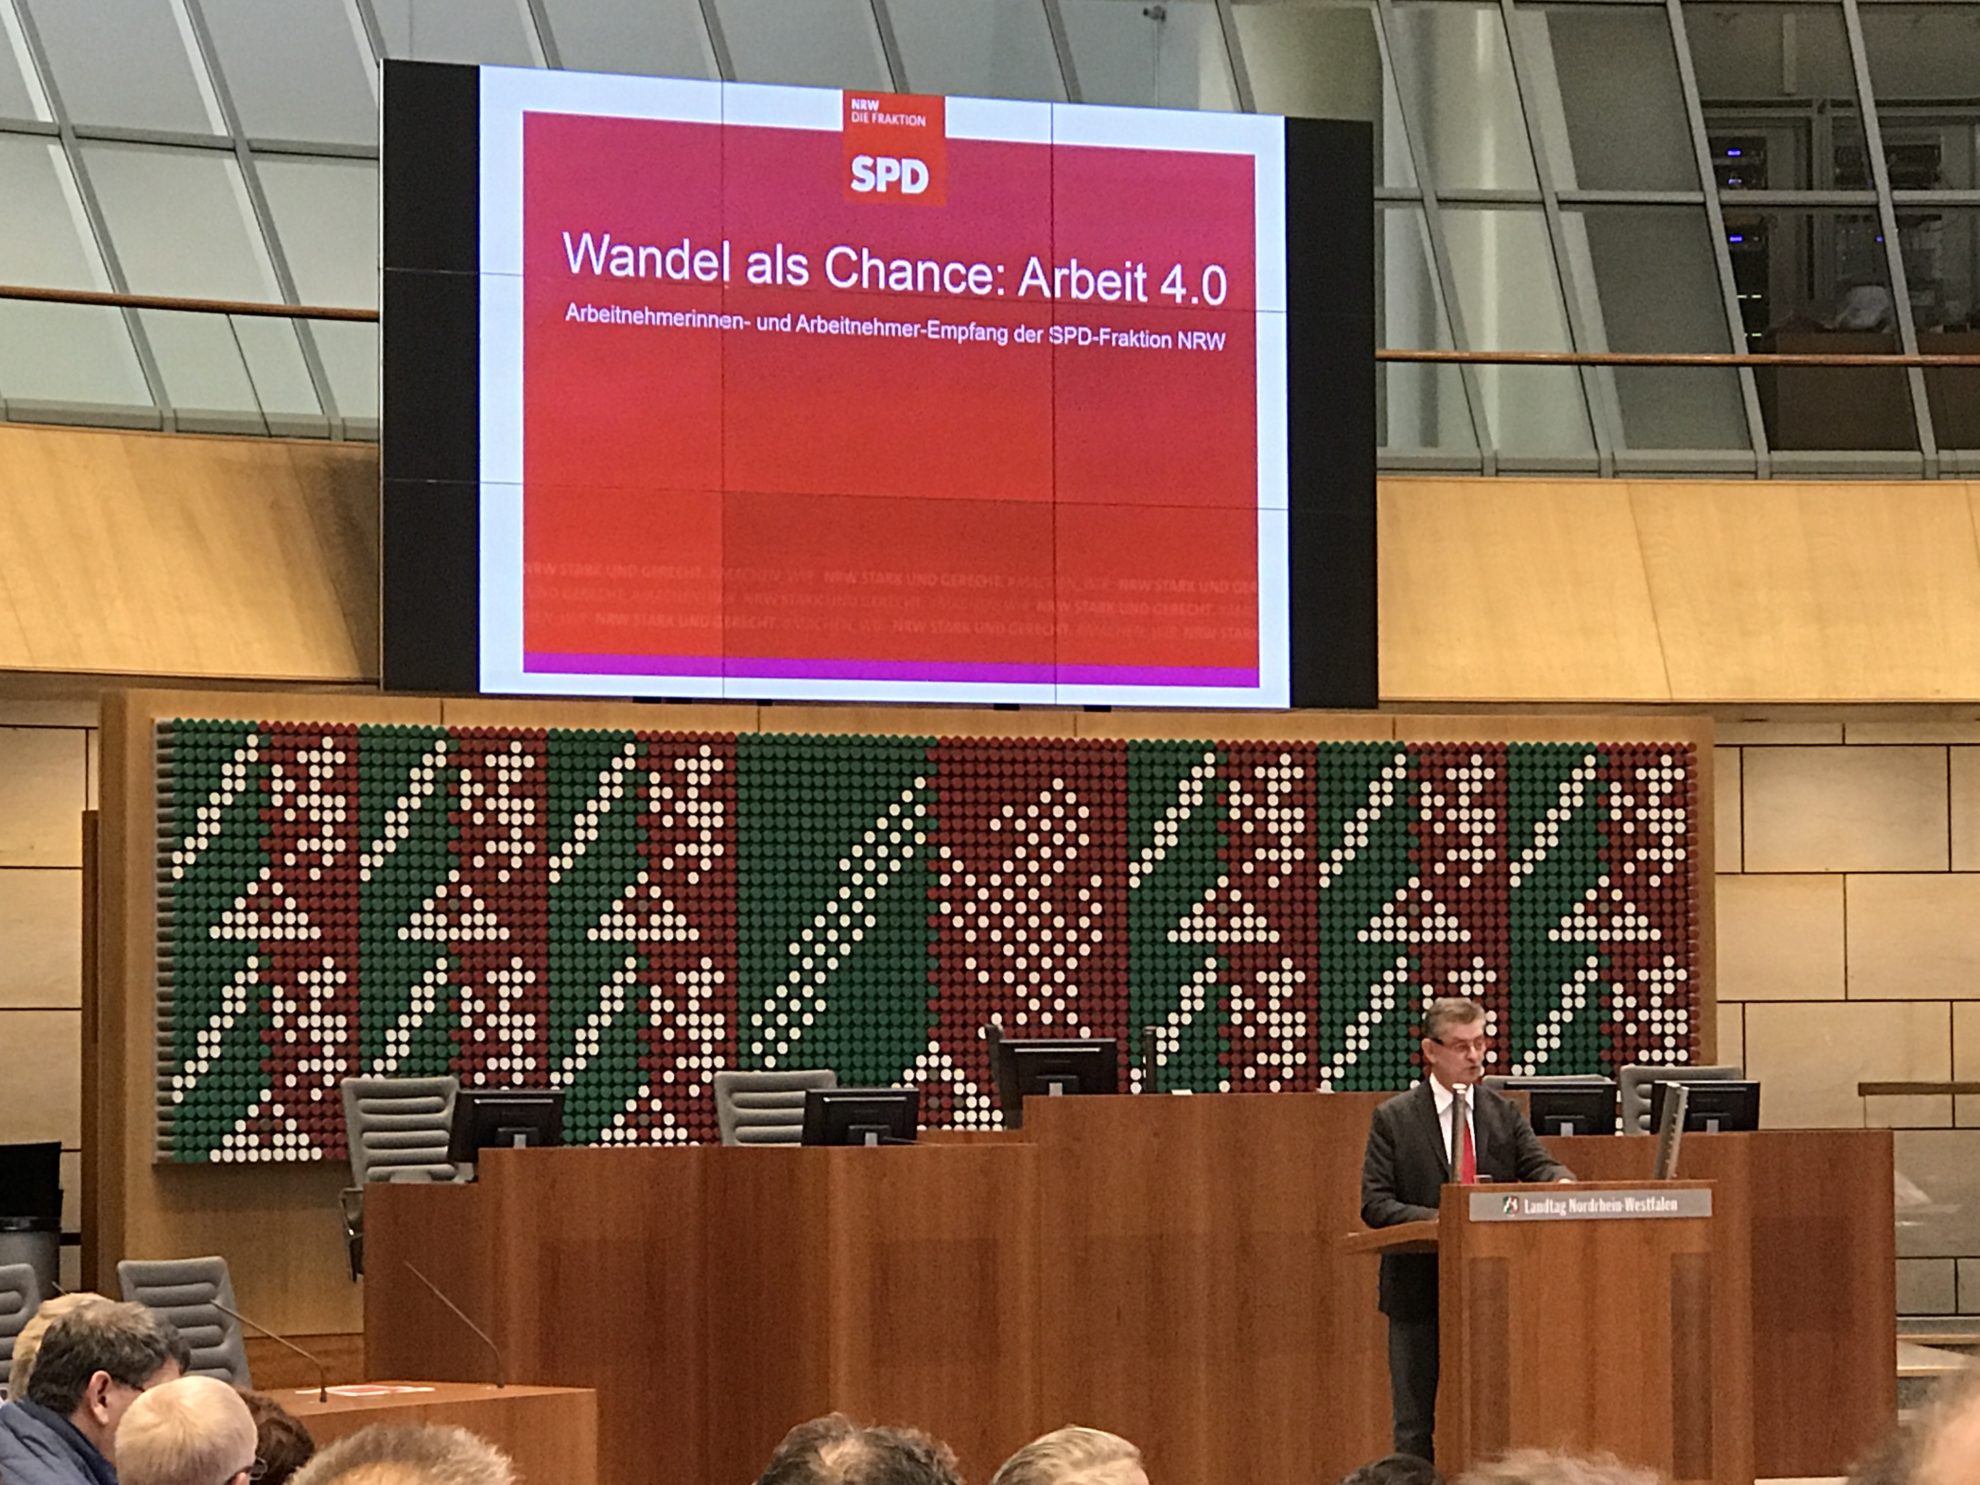 Arbeitnehmerempfang der SPD-Fraktion NRW: Fraktionsvorsitzender Norbert Römer